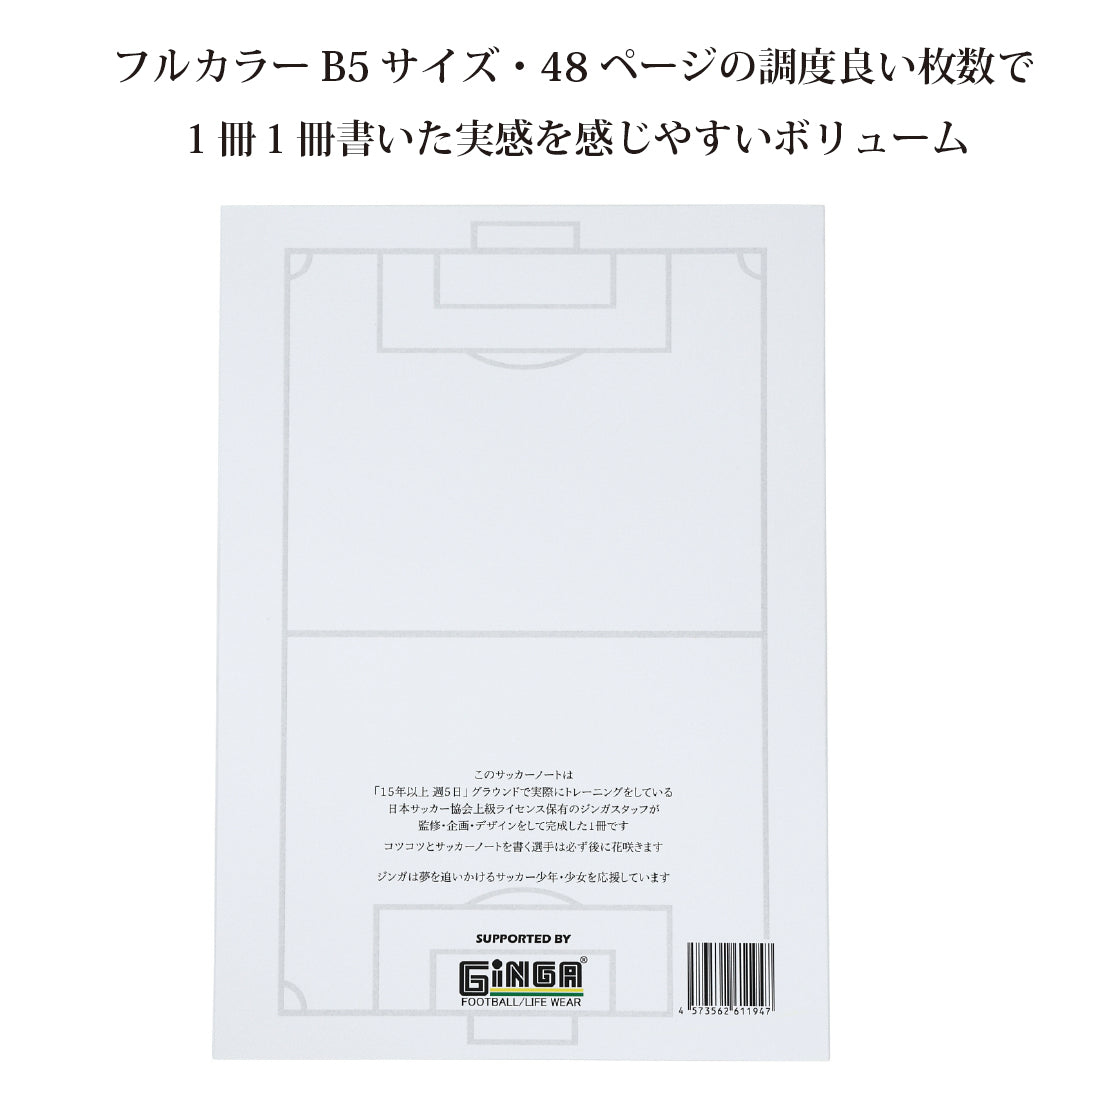 サッカー フットサル | trust-estate.jp